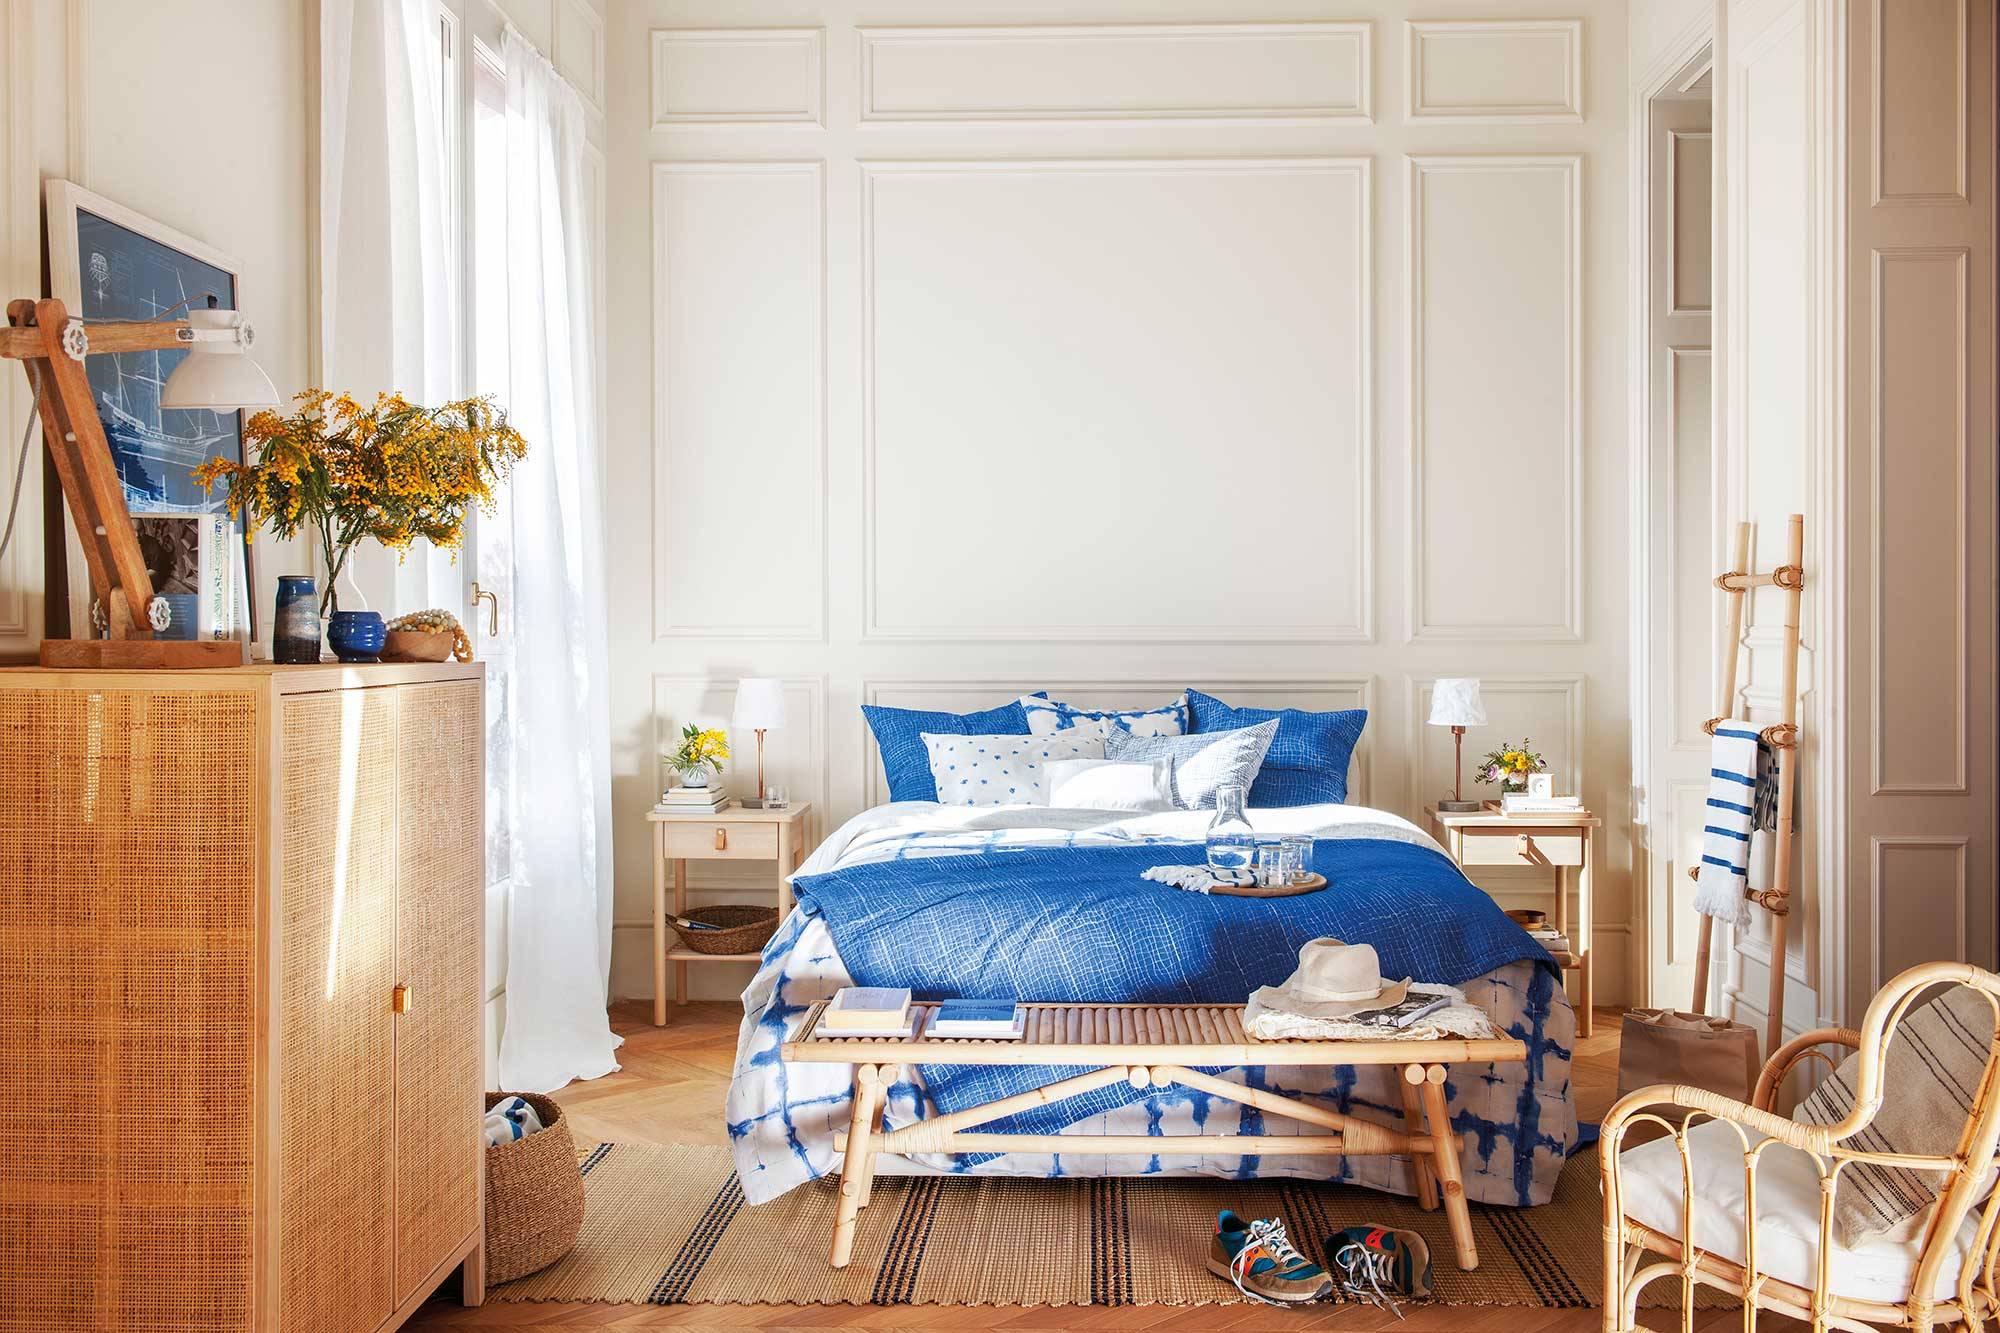 Dormitorio de primavera de estilo clásico con molduras y ropa de cama azul y blanca.